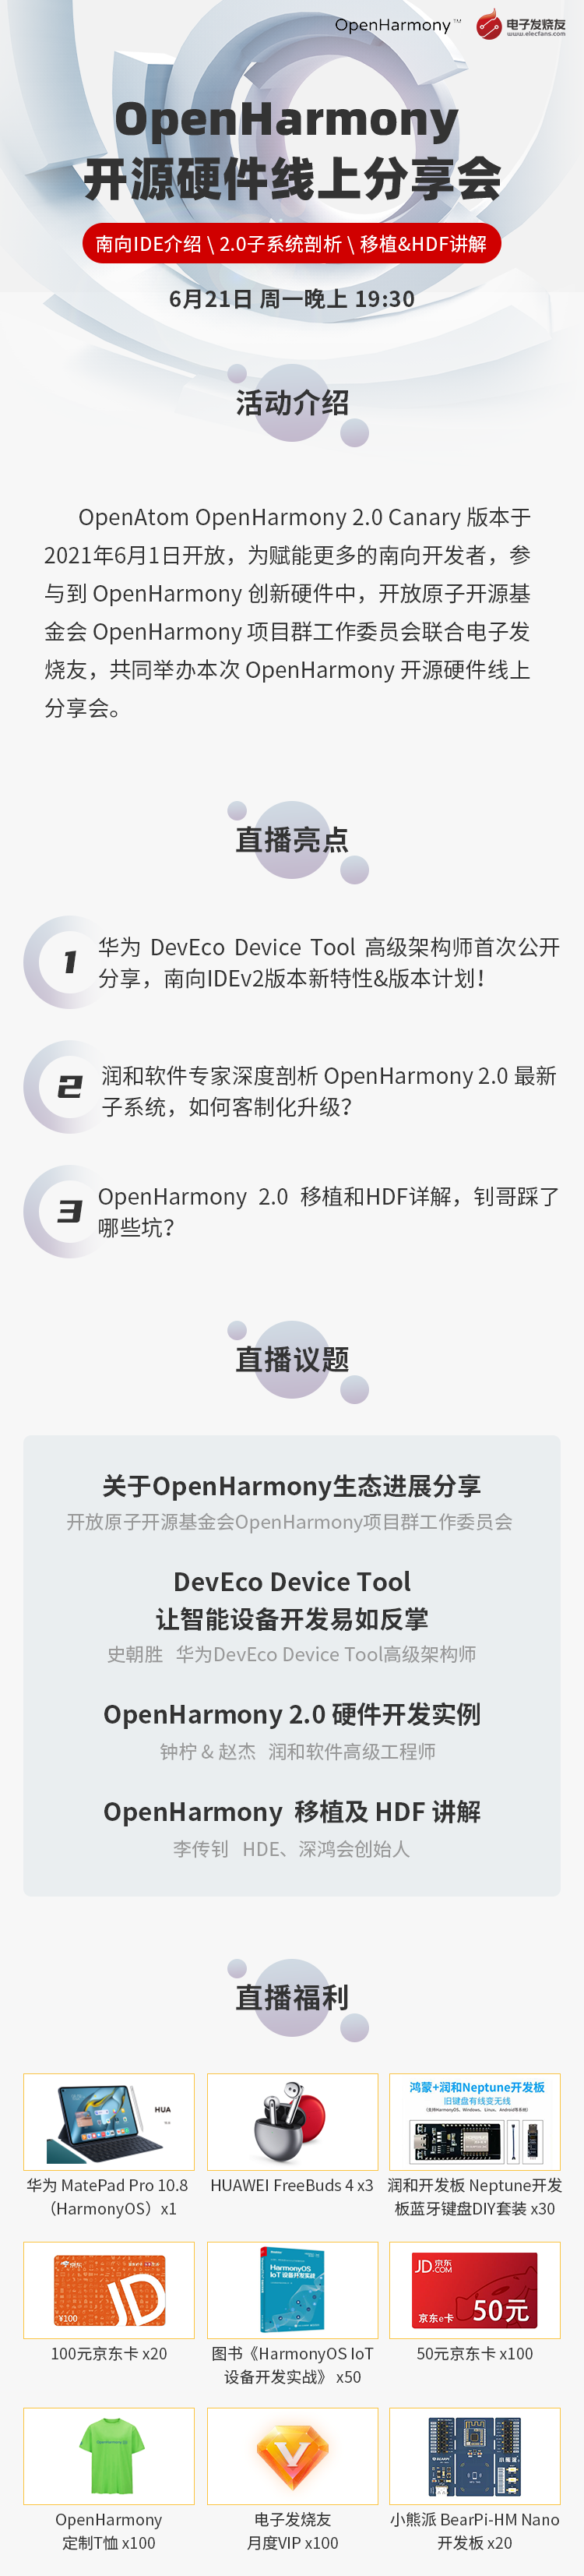 【0619】OpenHarmony长图海报_1_01.png